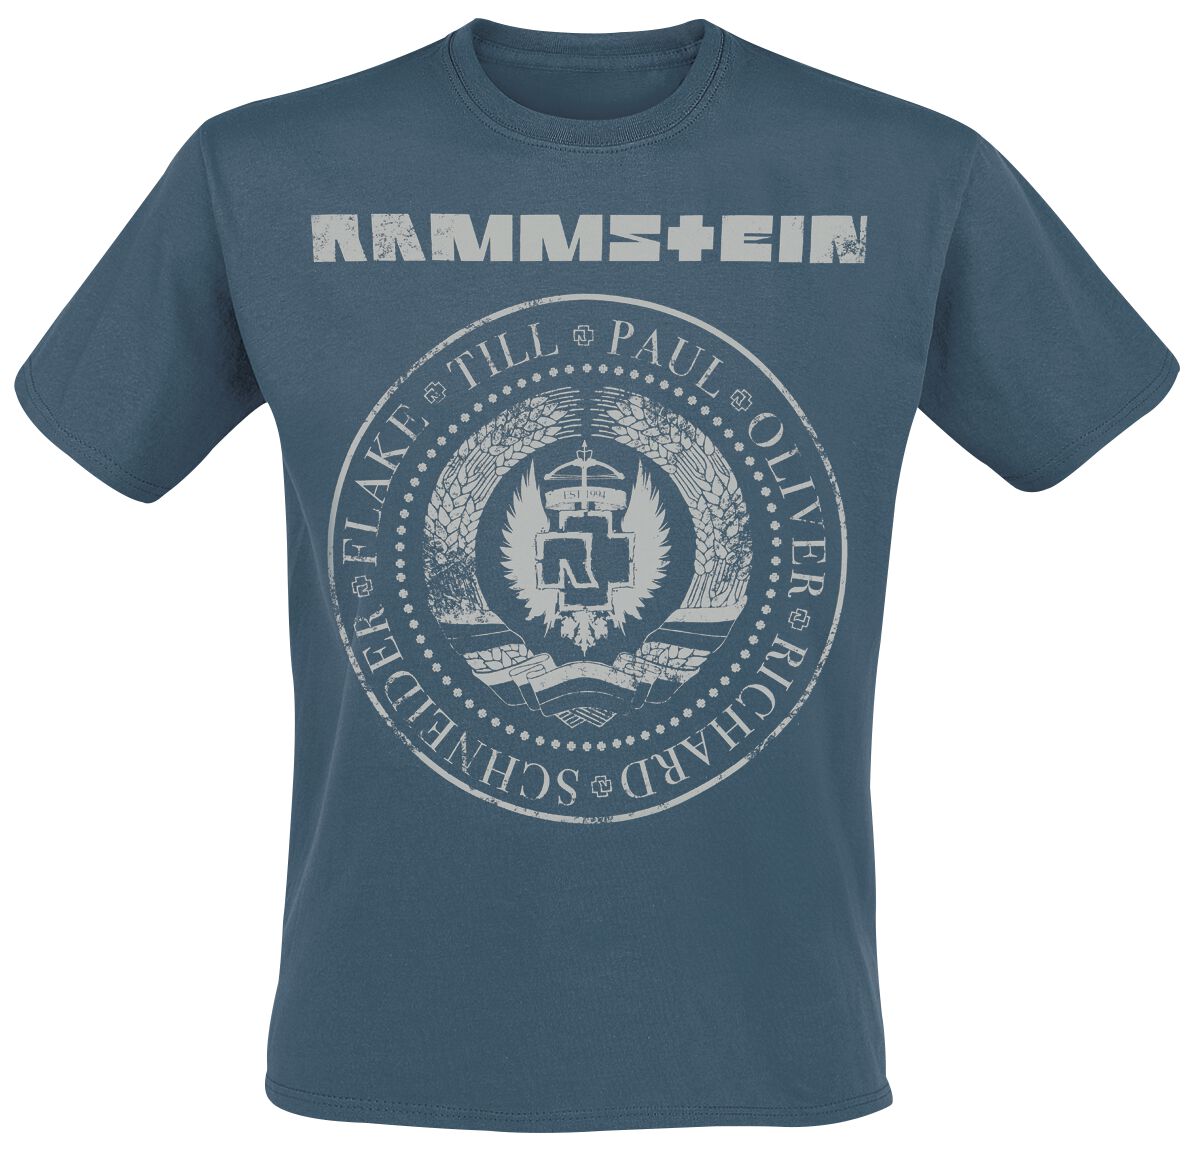 Rammstein T-Shirt - Est. 1994 - S bis XXL - für Männer - Größe L - blau  - Lizenziertes Merchandise!